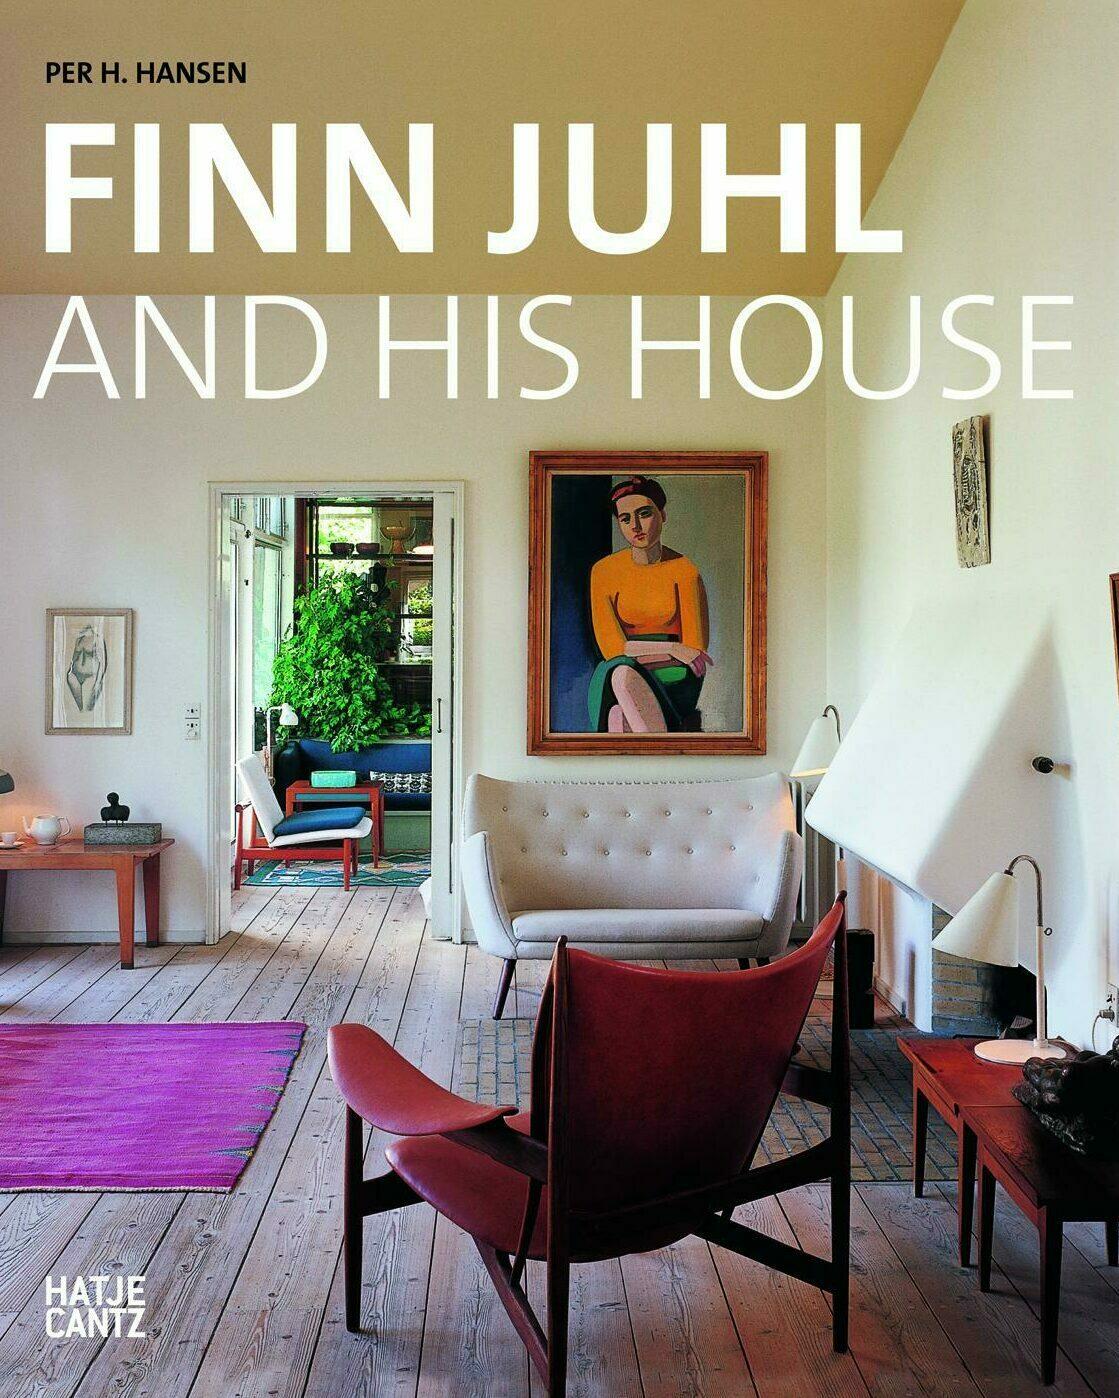 finn juhl and his house, per h. hansen, wohnbuch, einrichtungsbuch, einrichtungsidee, wohnidee, inneneinrichtung, architektur, interieur